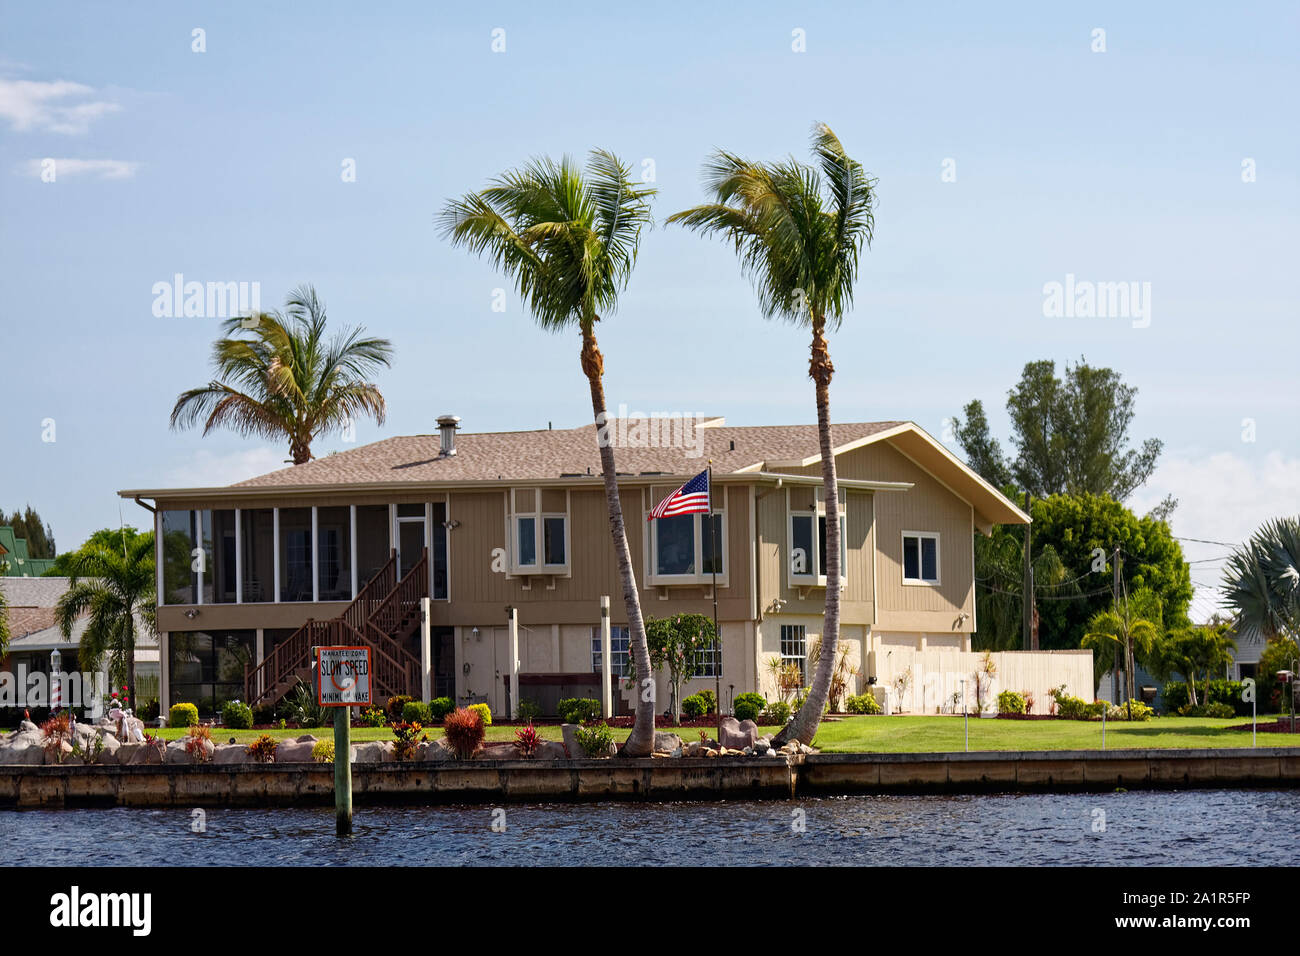 House, Waterfront, la voie fluviale, de 2 étages, pont supérieur, US flag flying, aménagement paysager attrayant, palmiers, sud-ouest de la Floride, FL, spr Banque D'Images